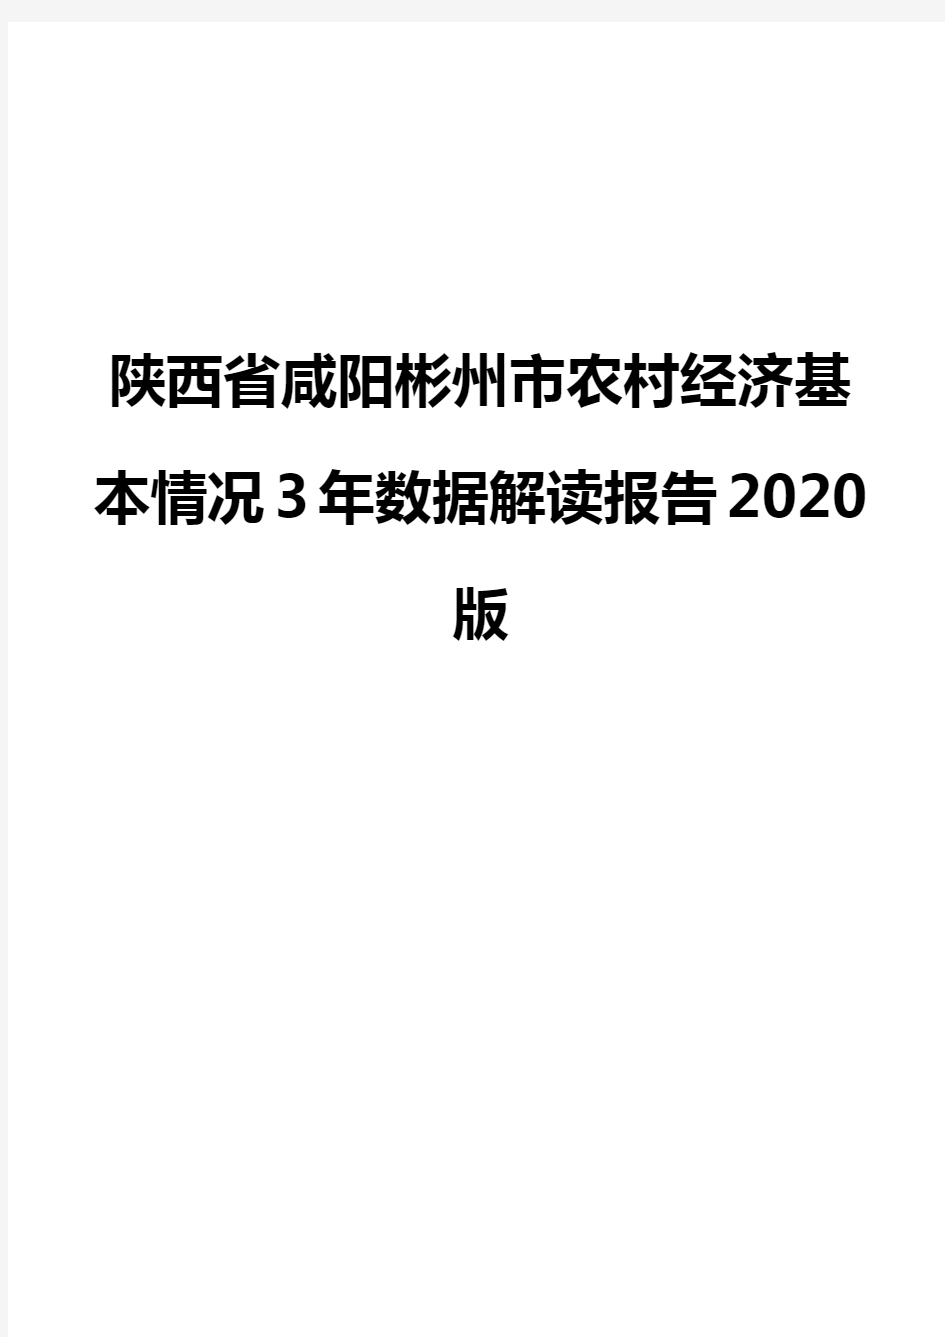 陕西省咸阳彬州市农村经济基本情况3年数据解读报告2020版